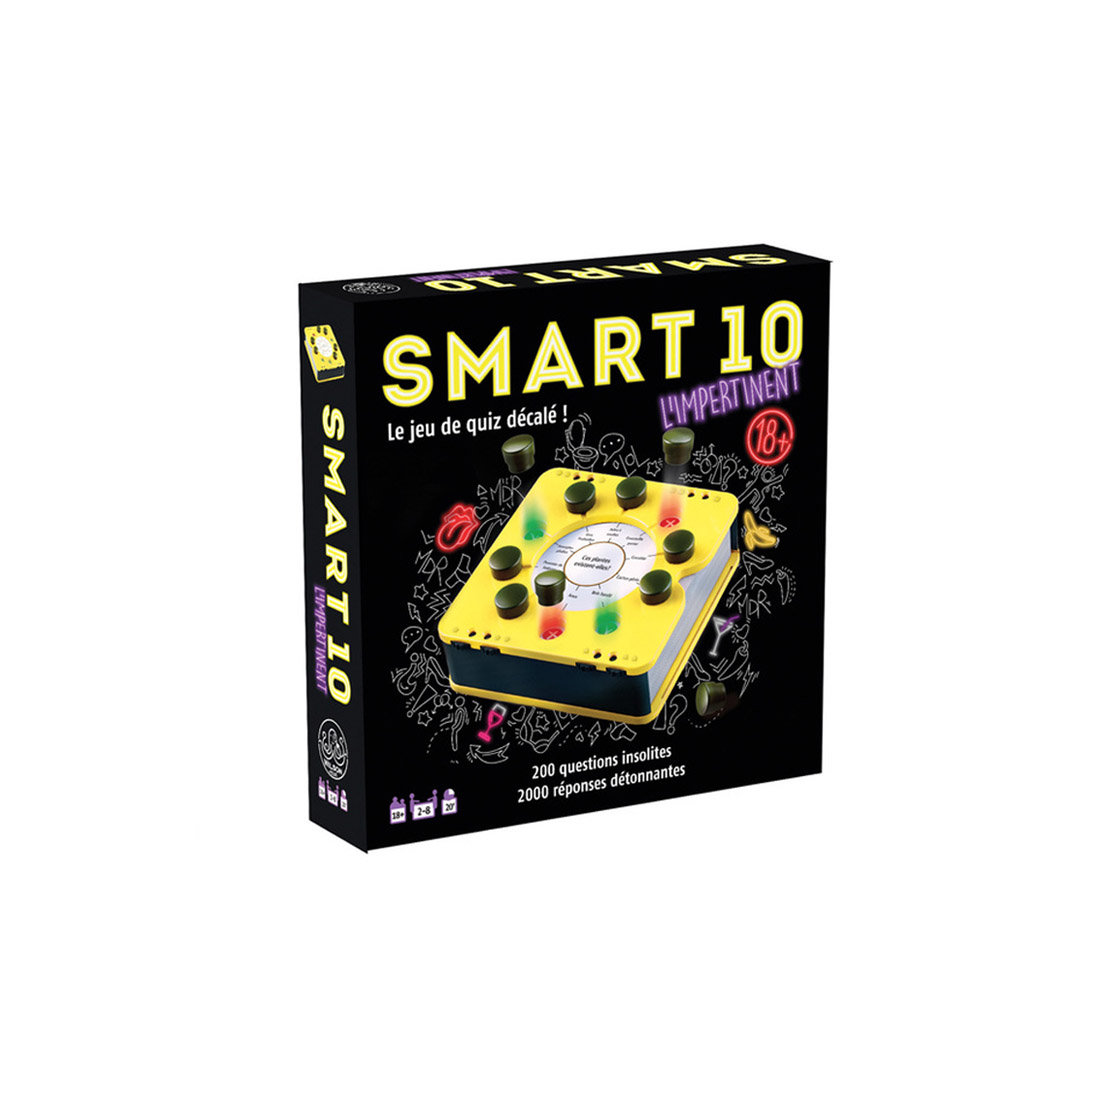 Smart 10: Österreich [eigenständige Erweiterung]